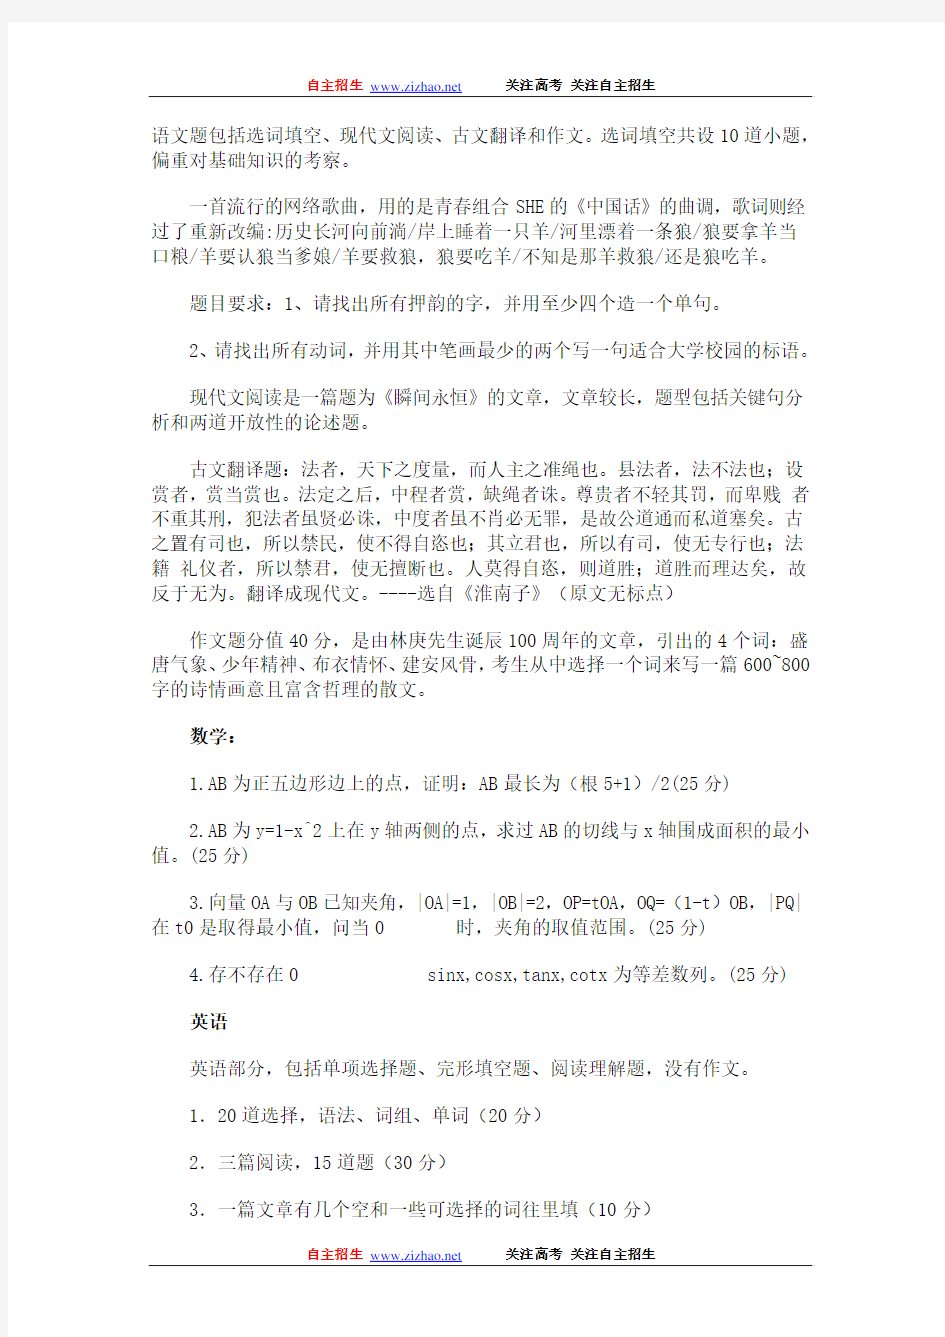 2010年北京大学自主招生试题(与北京航空航天大学和香港大学联考)